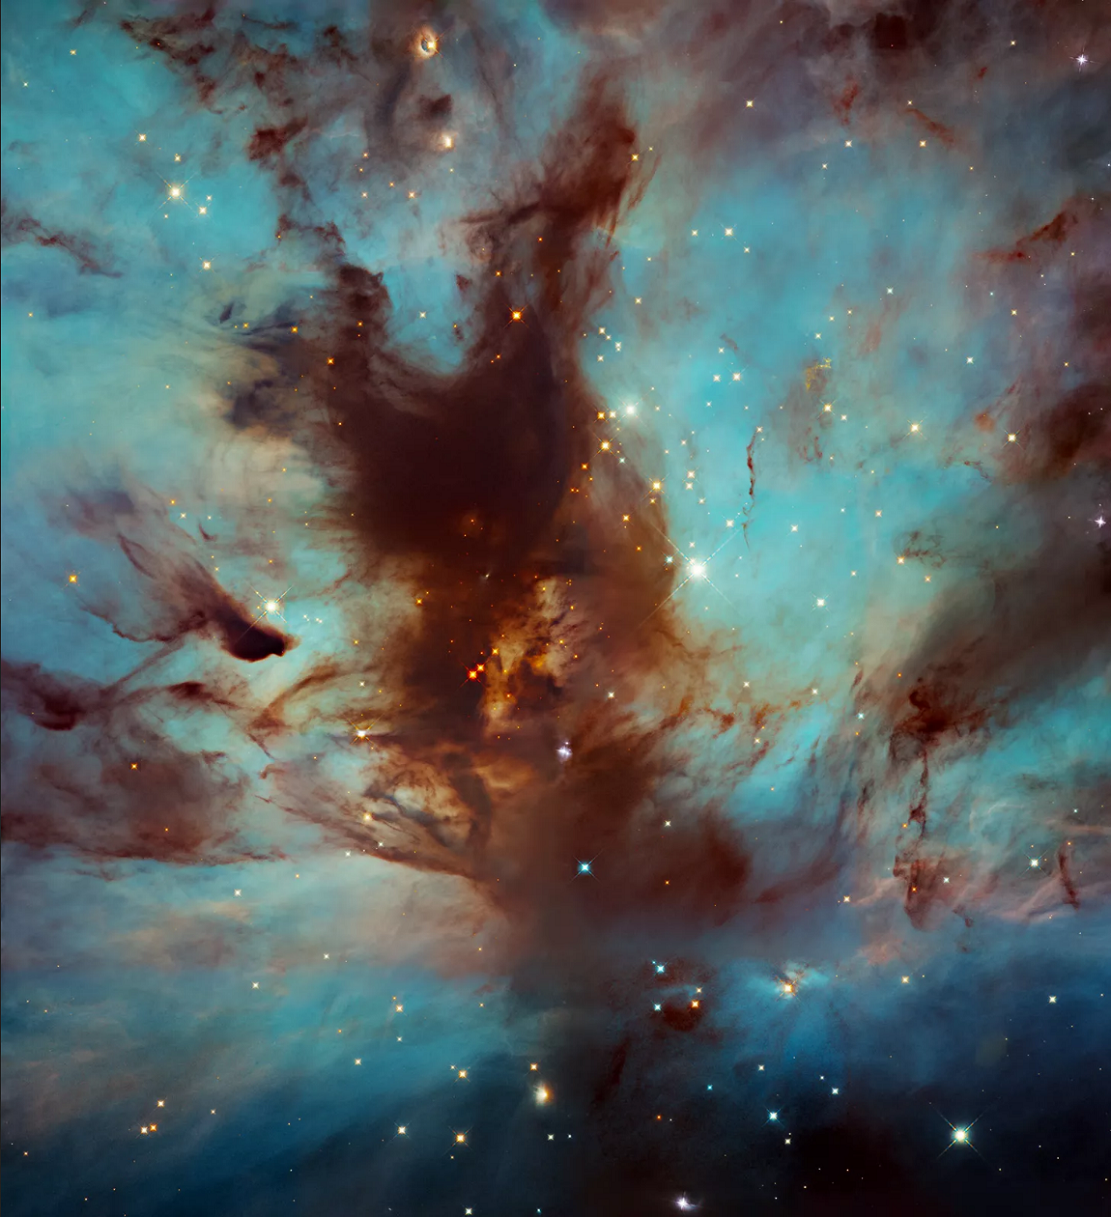 哈勃太空望远镜拍摄的猎户座火焰星云NGC 2024